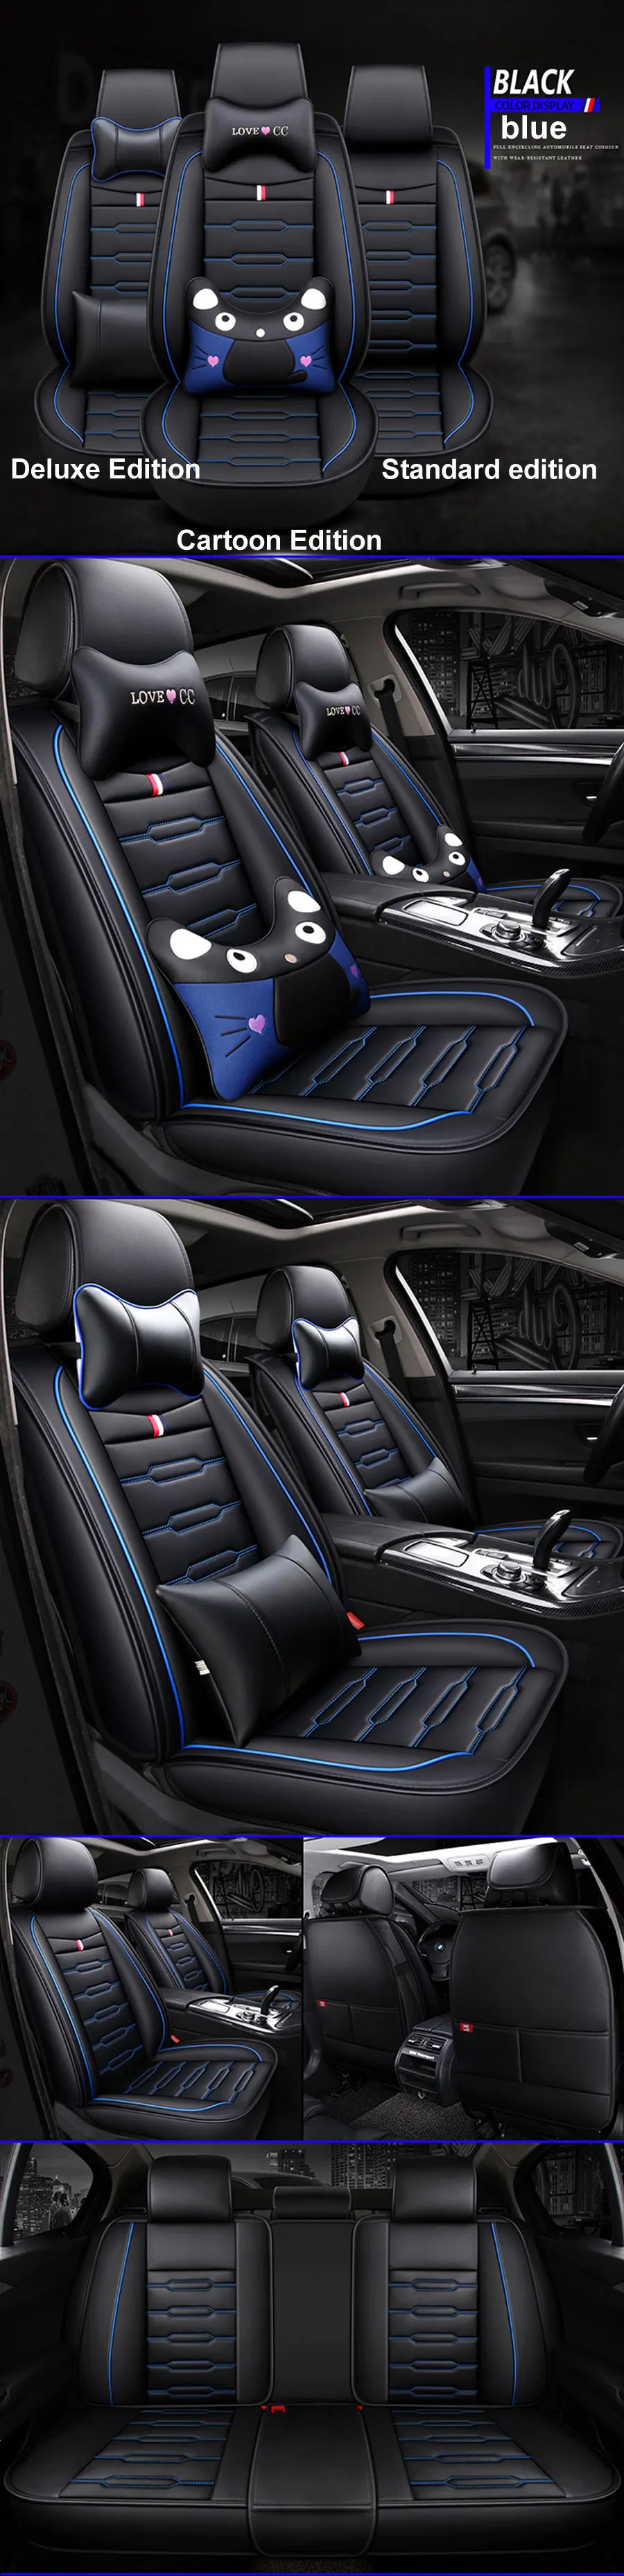 Новые Мультяшные роскошные кожаные автомобильные Чехлы для BMW 1 3 5 серии x1 x3 x5 x6 универсальные аксессуары для интерьера